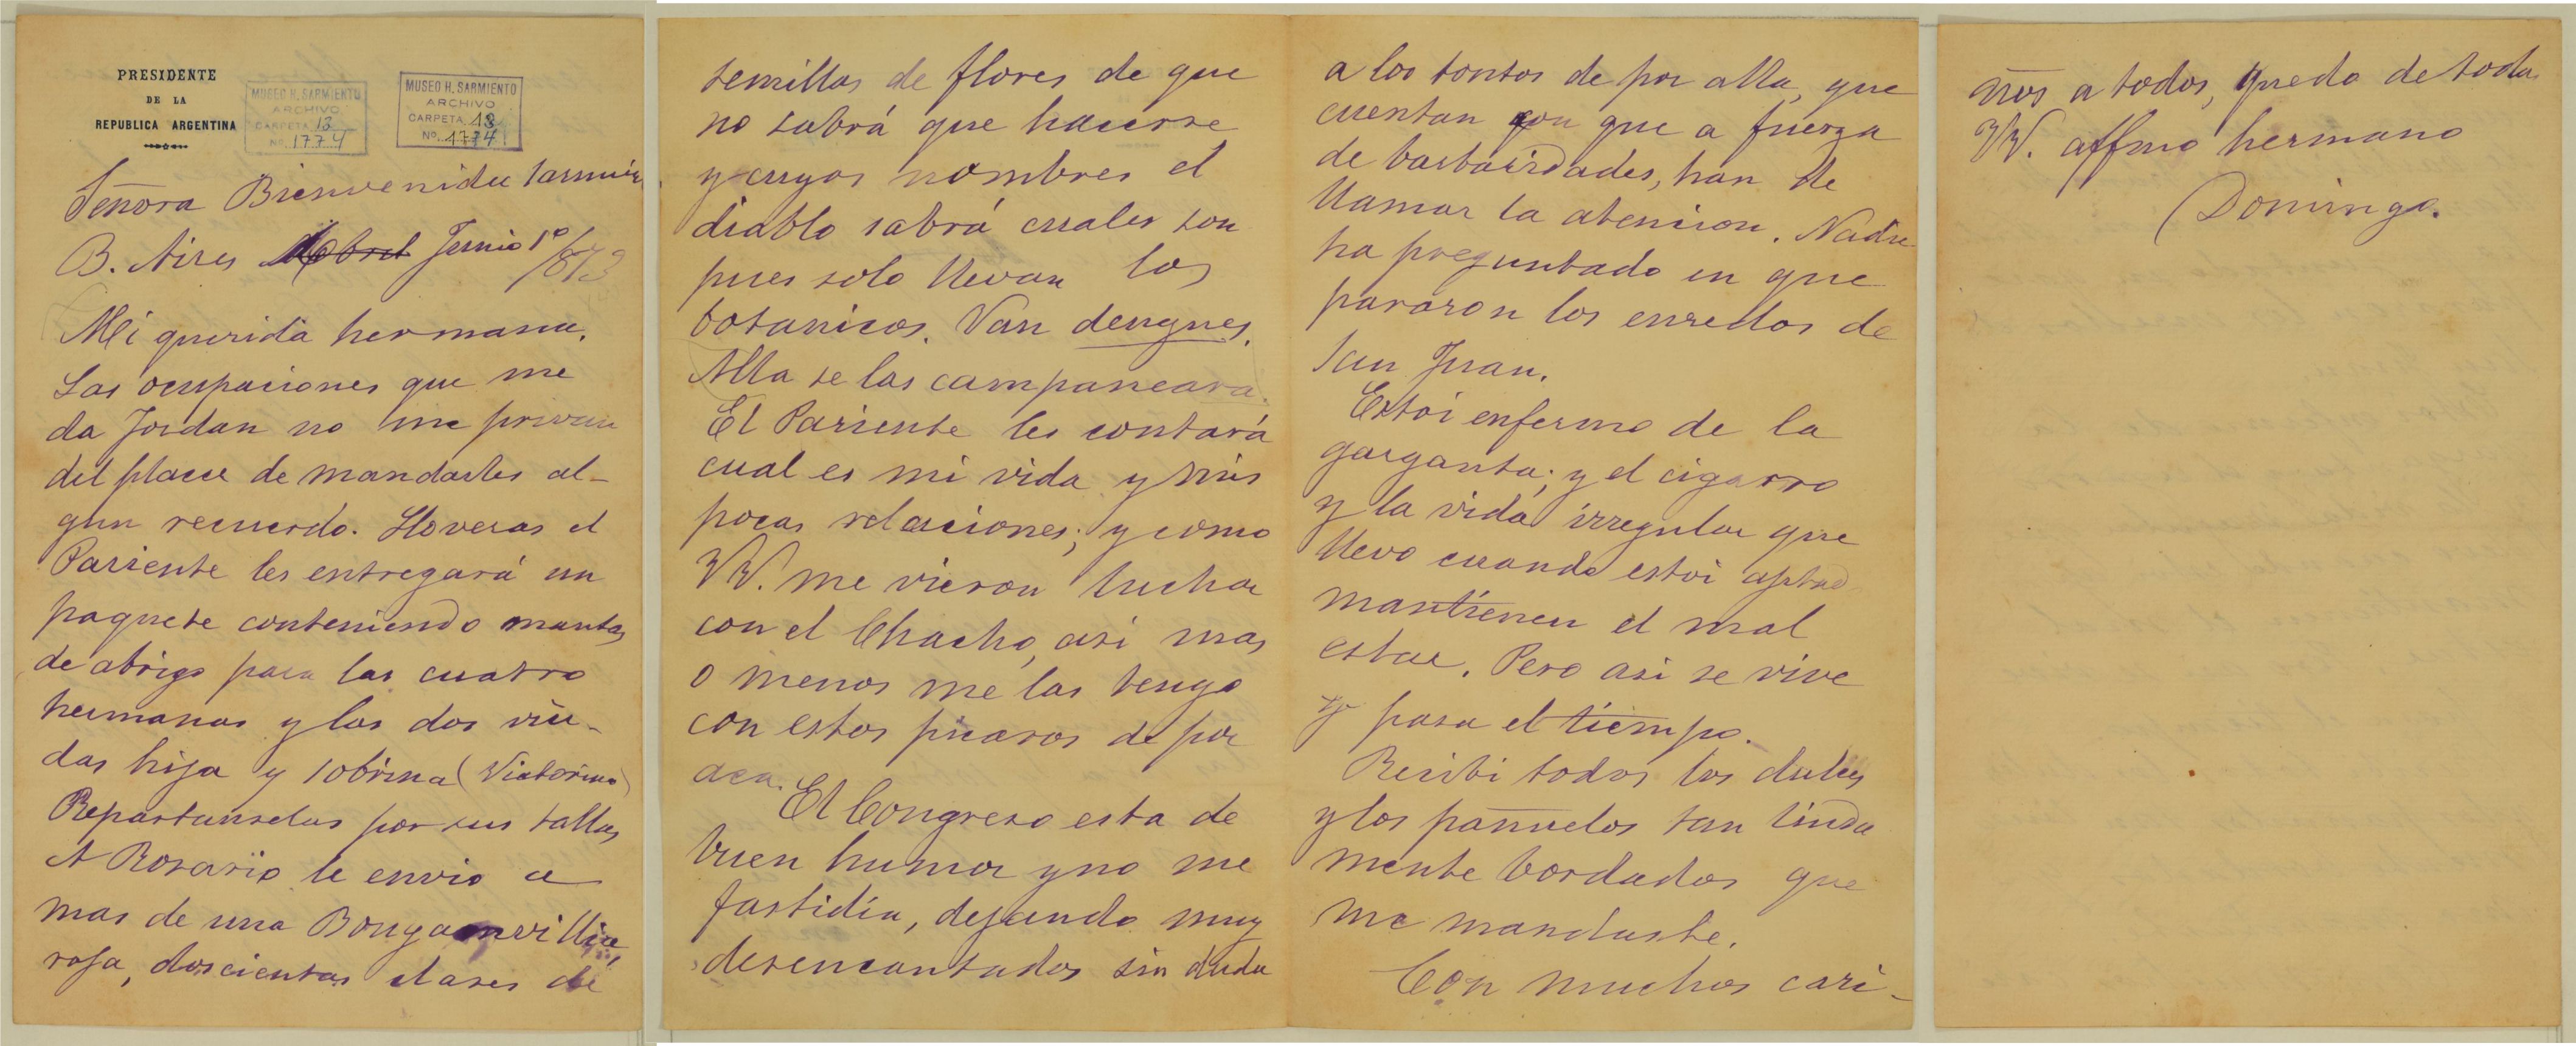 Carta a Bienvenida Sarmiento (01/06/1873)